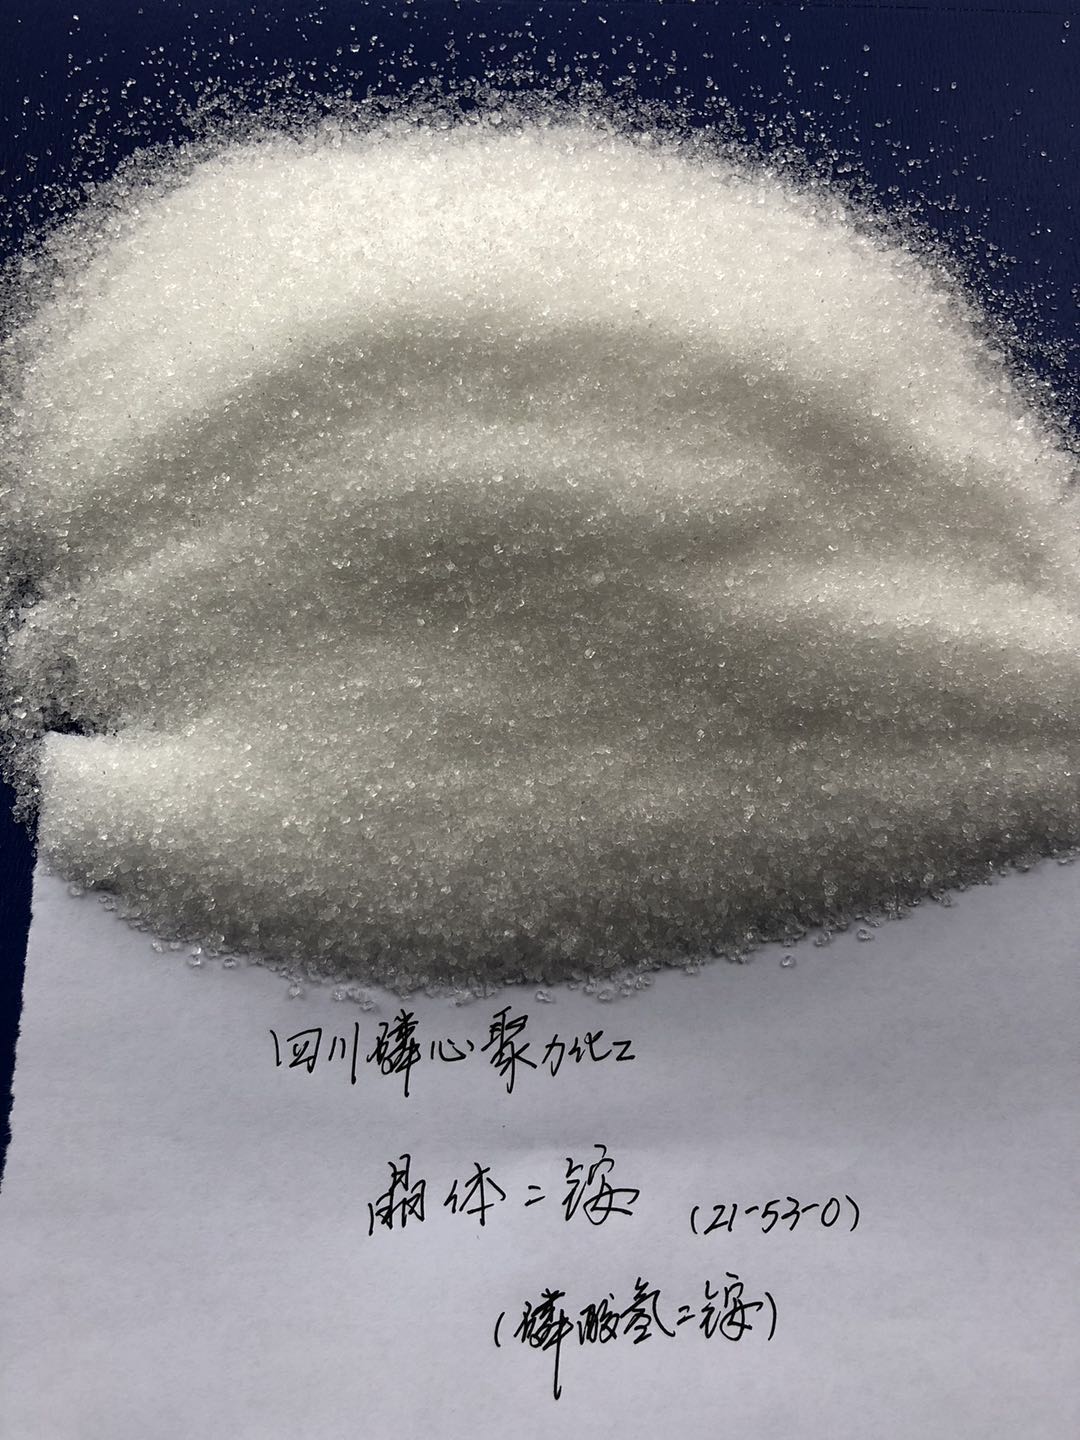 供应高含量晶体磷酸二铵 DAP21-53-0